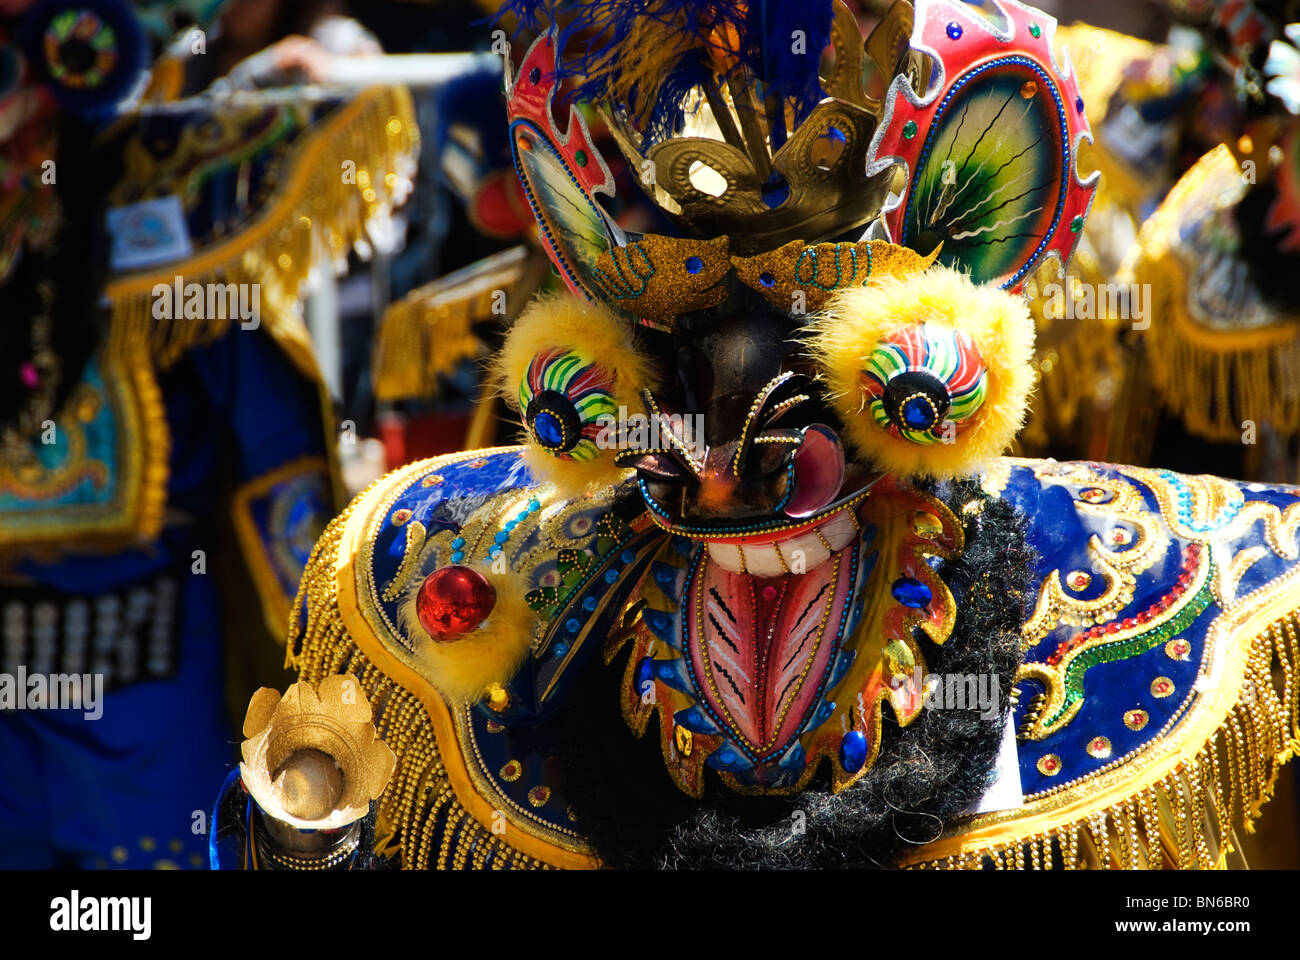 Oruro Carnival Banque d'image et photos - Alamy